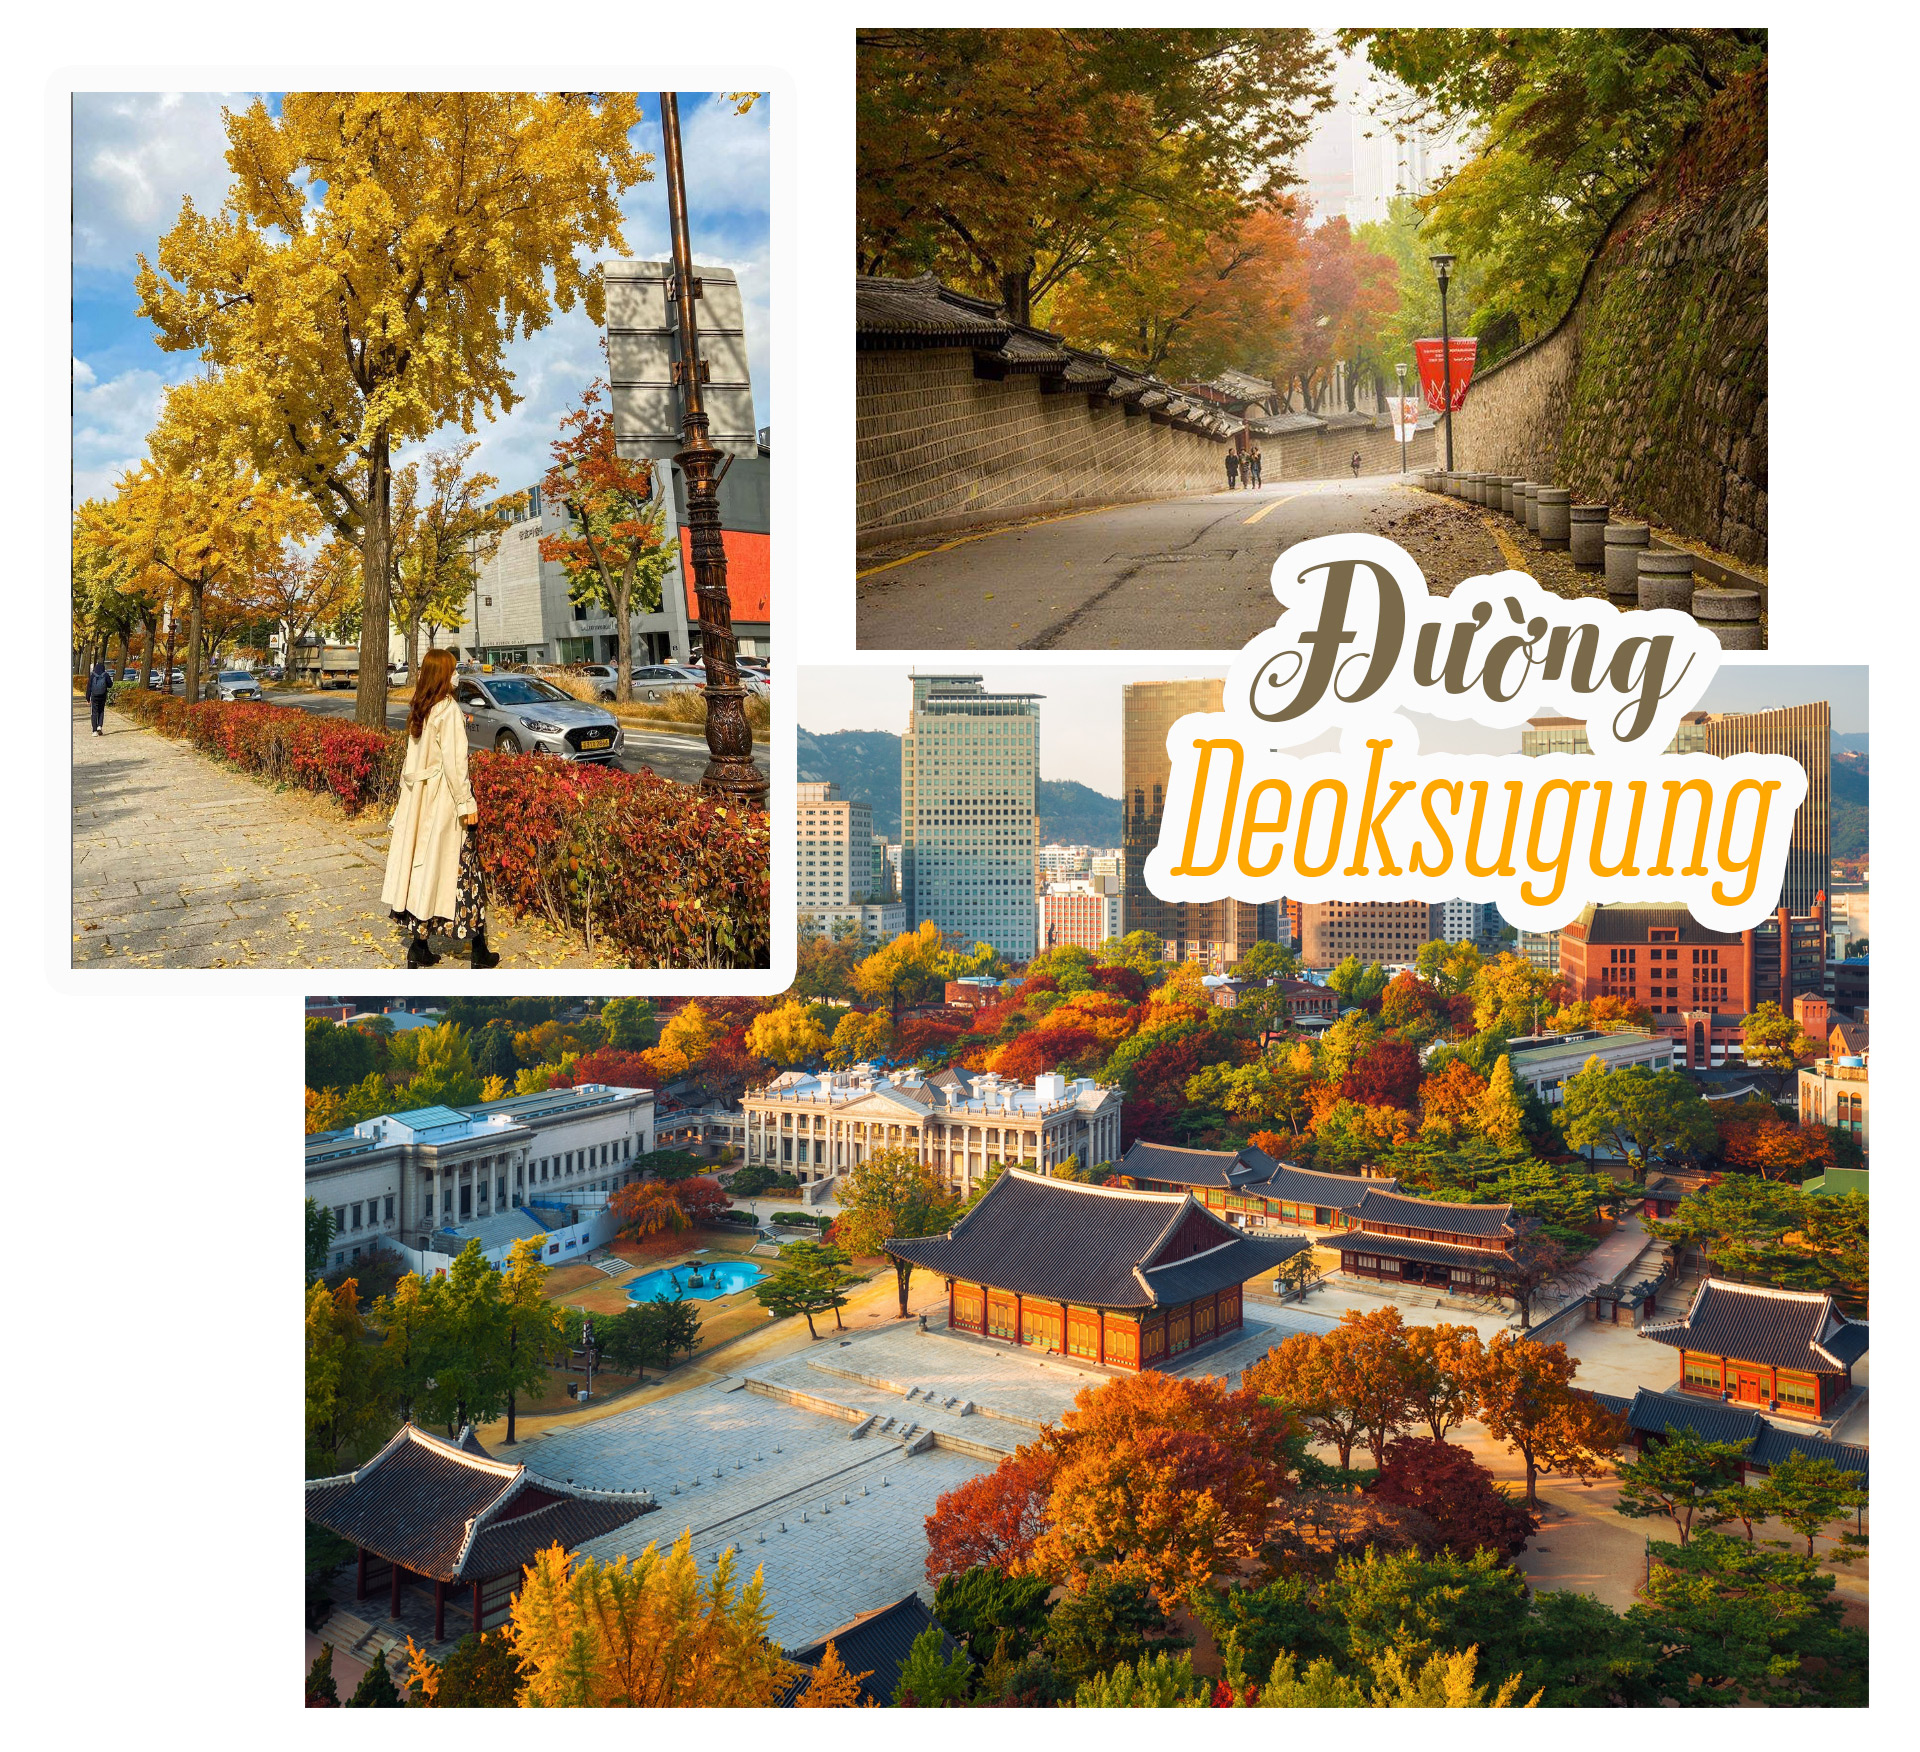 Mùa thu rực rỡ ở Hàn Quốc làm say lòng bao du khách - 3